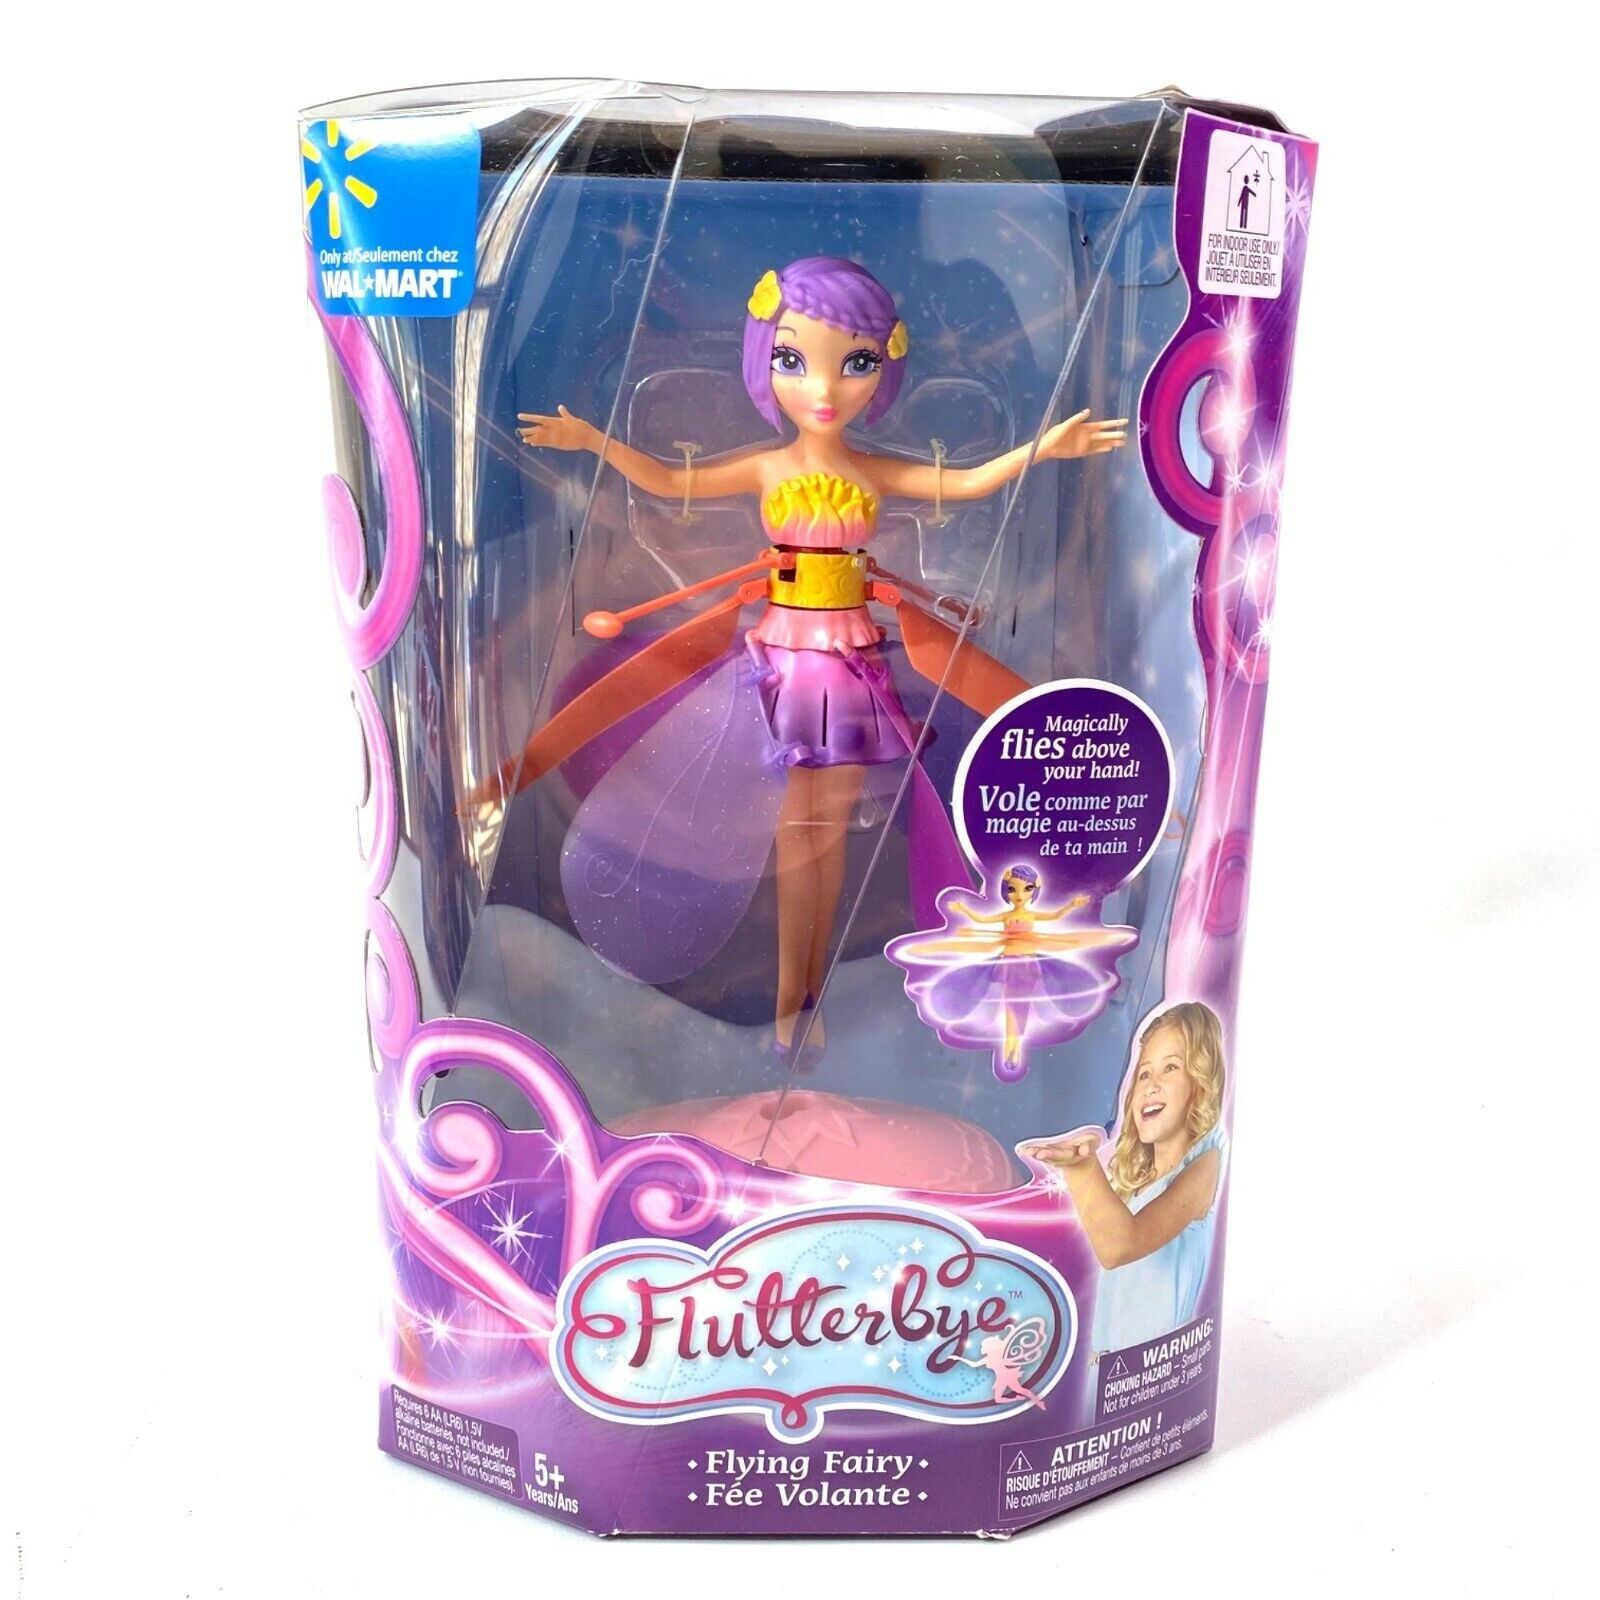 Flytterbye Flying Fairy New in Box Purple Hair Orange Purple WIn